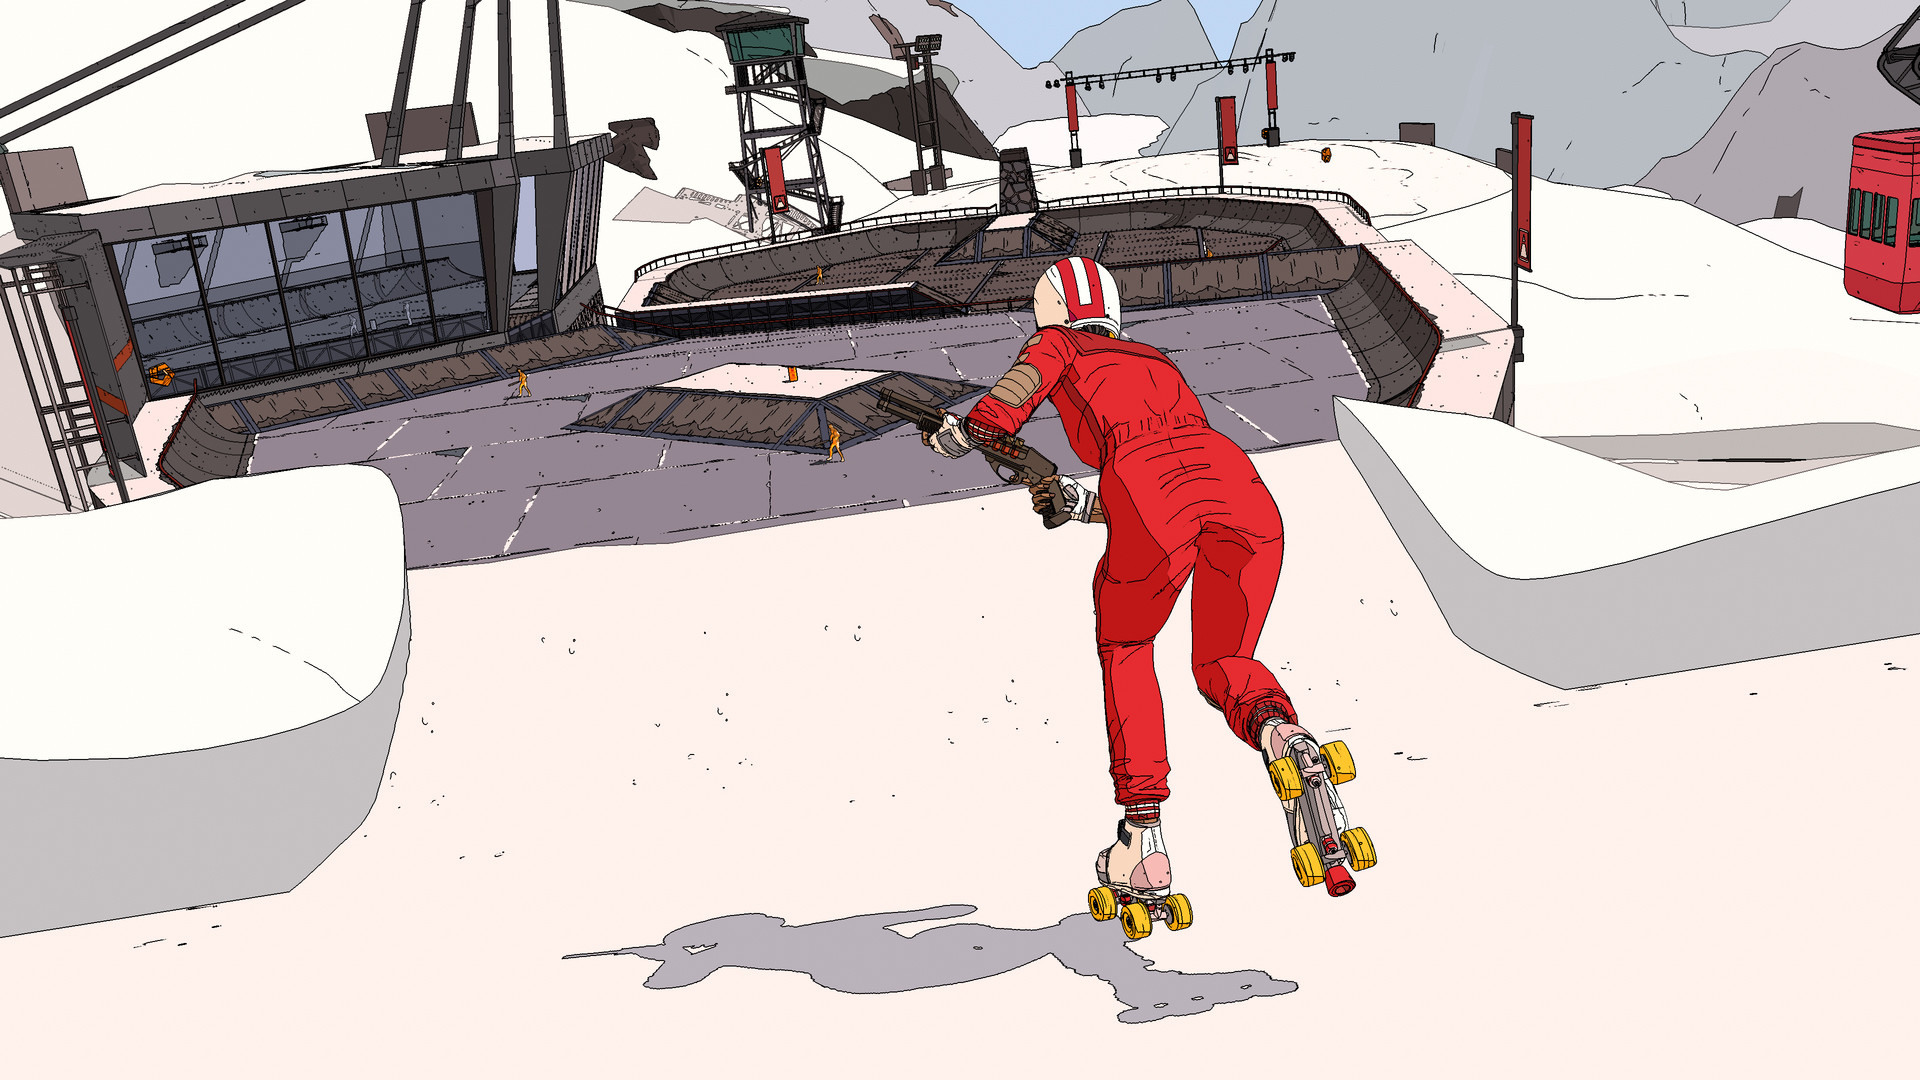 【博狗扑克】《欧利欧利世界》开发商打造未来风滑板射击游戏《室内滑轮赛》将于今年8月推出